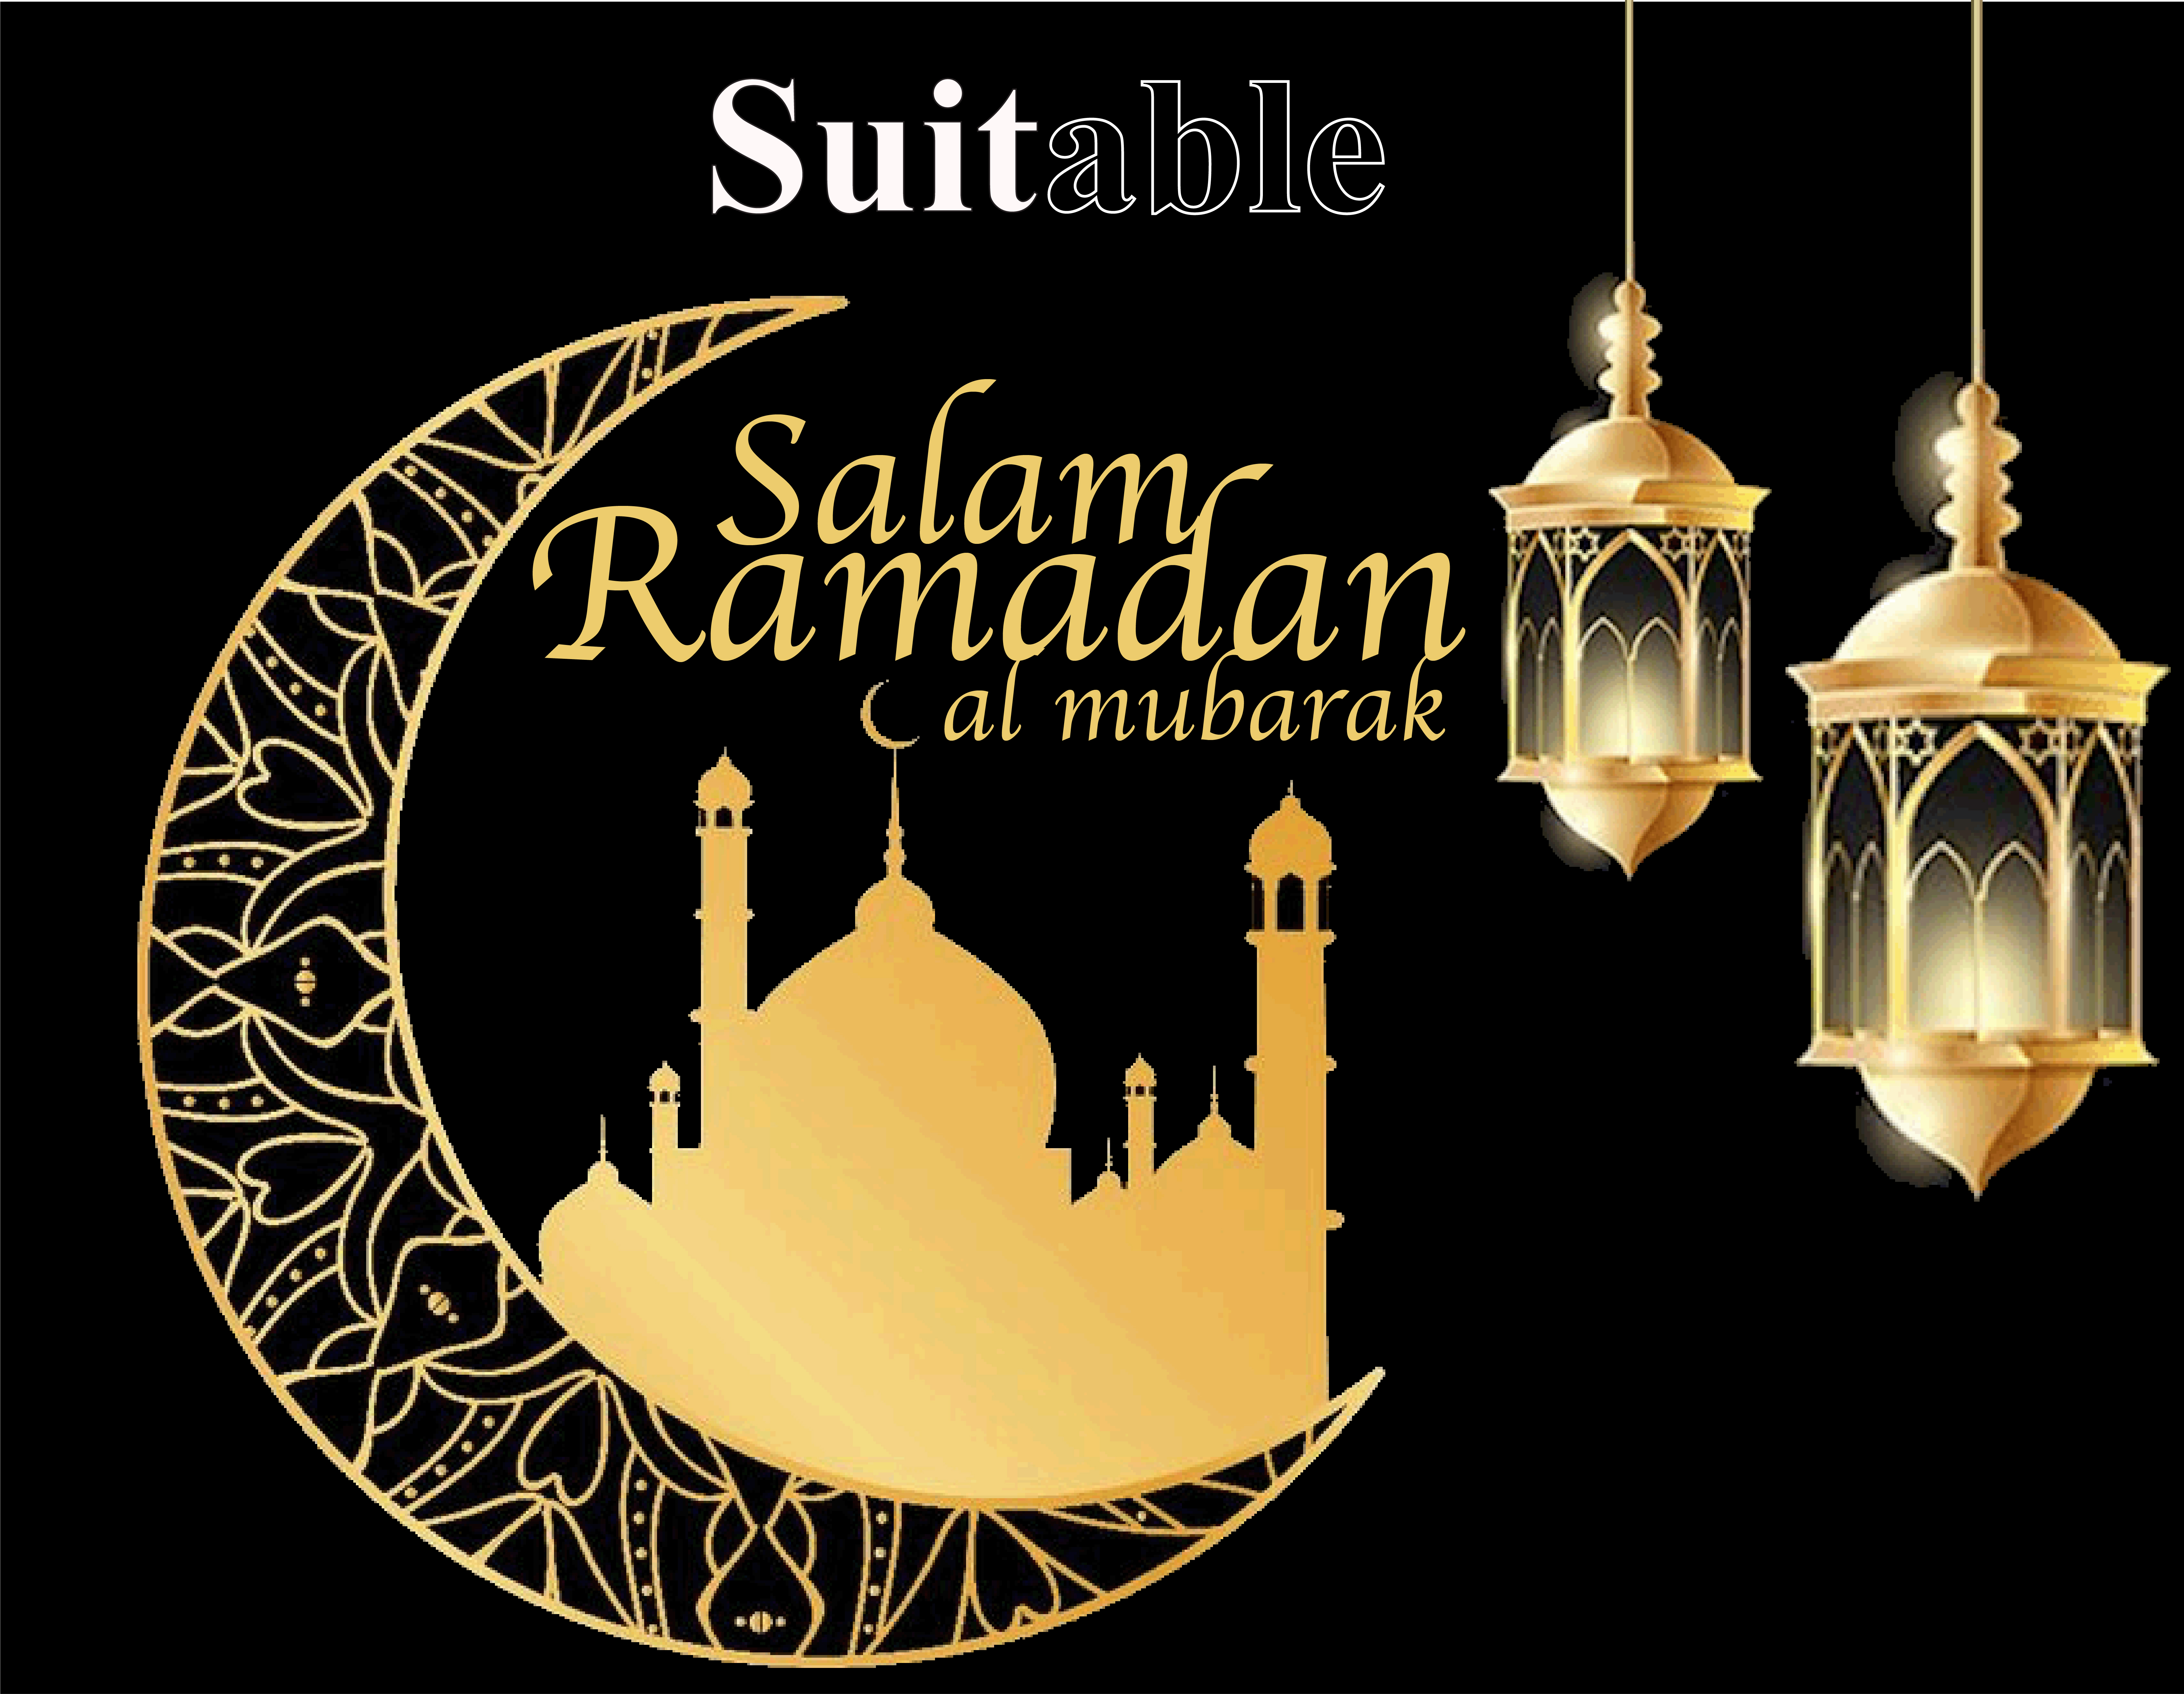 Suitable Ramadan 2019